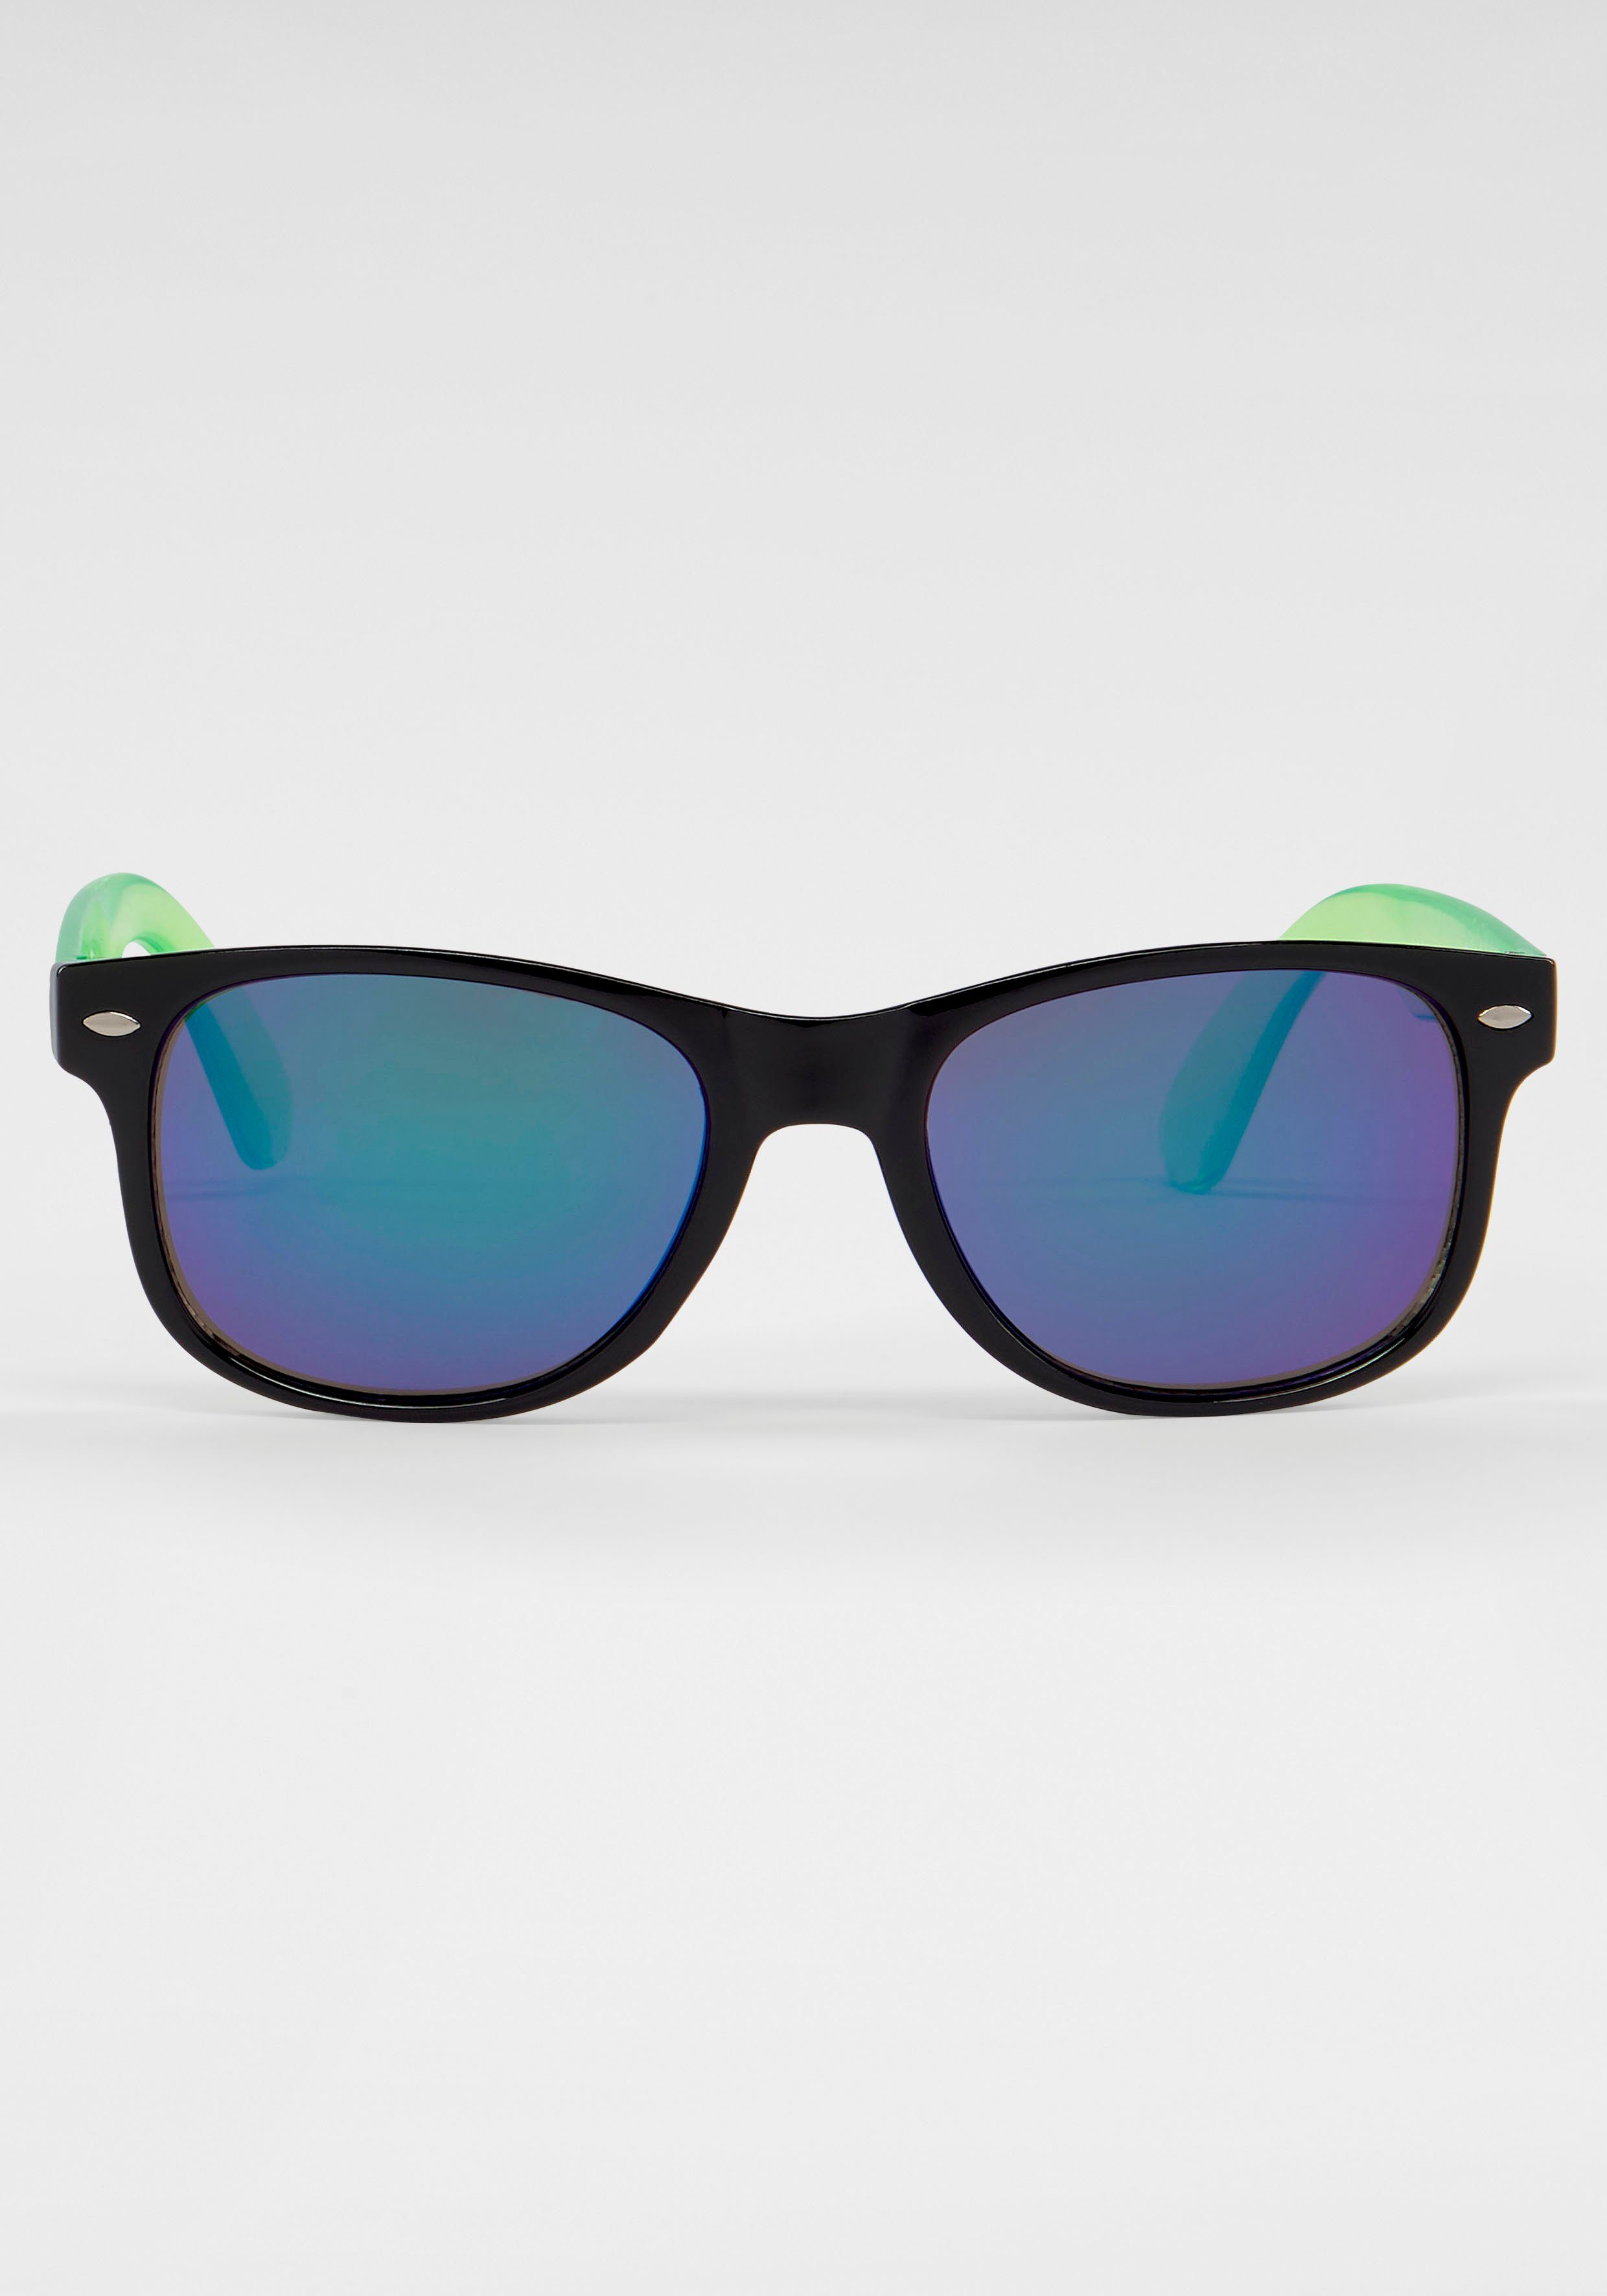 Gläser Sonnenbrille, Spiegel-Optik PRIMETTA Eyewear in